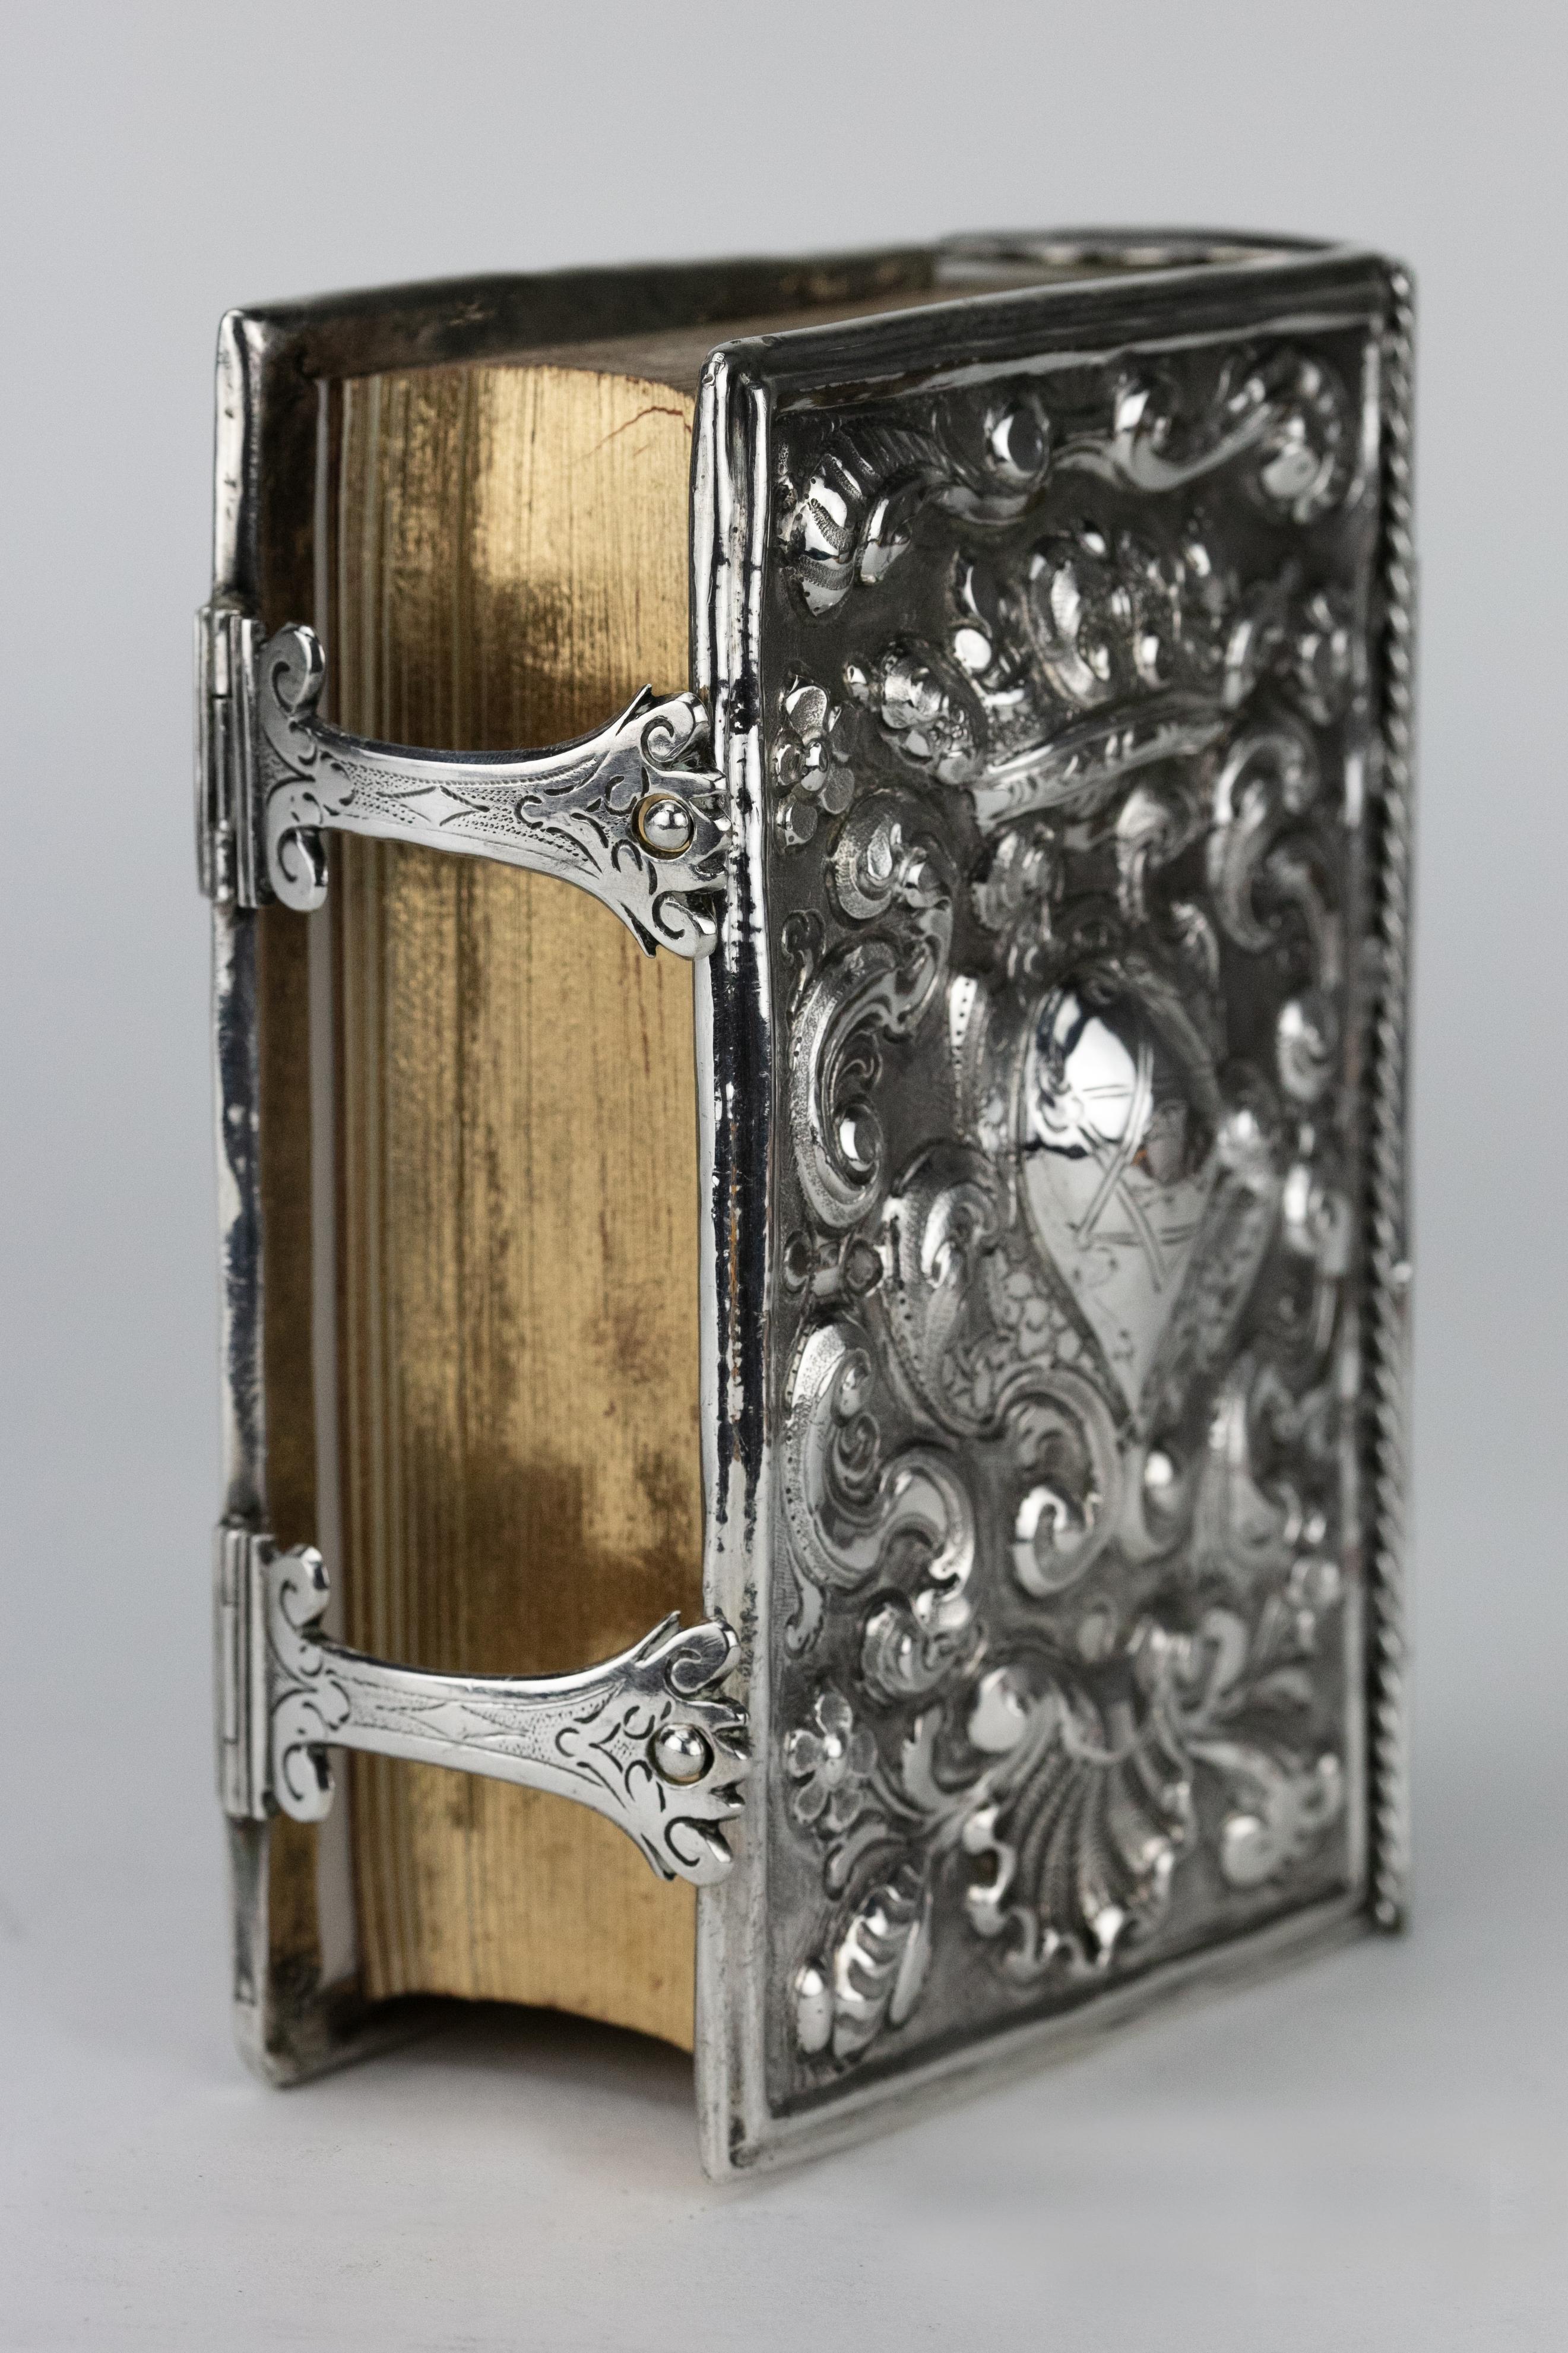 Reliure de livre judaïque gaufrée à la main, Venise, Italie, vers 1700.
Les deux couvertures sont estampées d'armoiries sous des coronets encadrés de rinceaux, de fleurs et d'une coquille, le dos étant ciselé à l'identique, sur fond mat.

Chaque